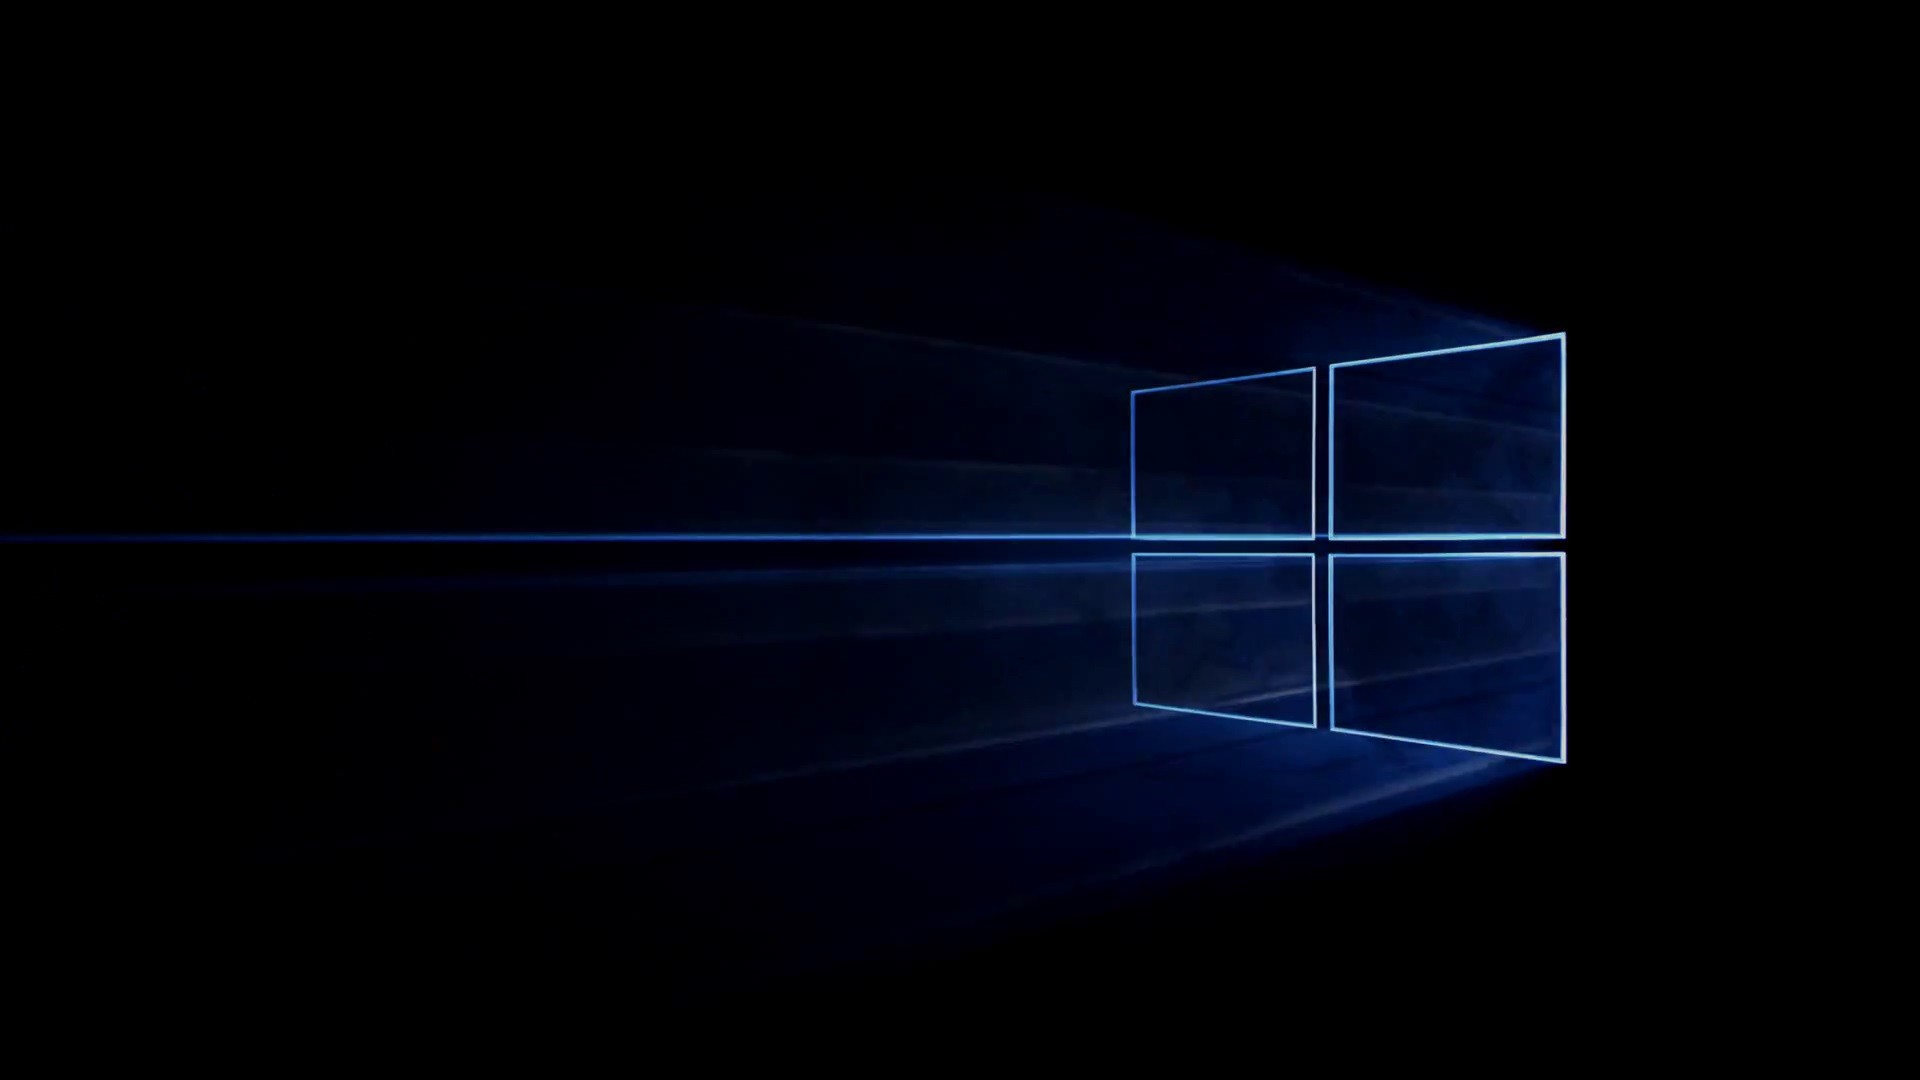 Hình nền Windows 10 màu đen sẽ mang lại cho bạn một trải nghiệm thật mới mẻ và đặc biệt. Với sự kết hợp giữa màu đen và các yếu tố khác, những hình nền này sẽ giúp cho màn hình máy tính của bạn thật sự nổi bật và thu hút mọi ánh nhìn.